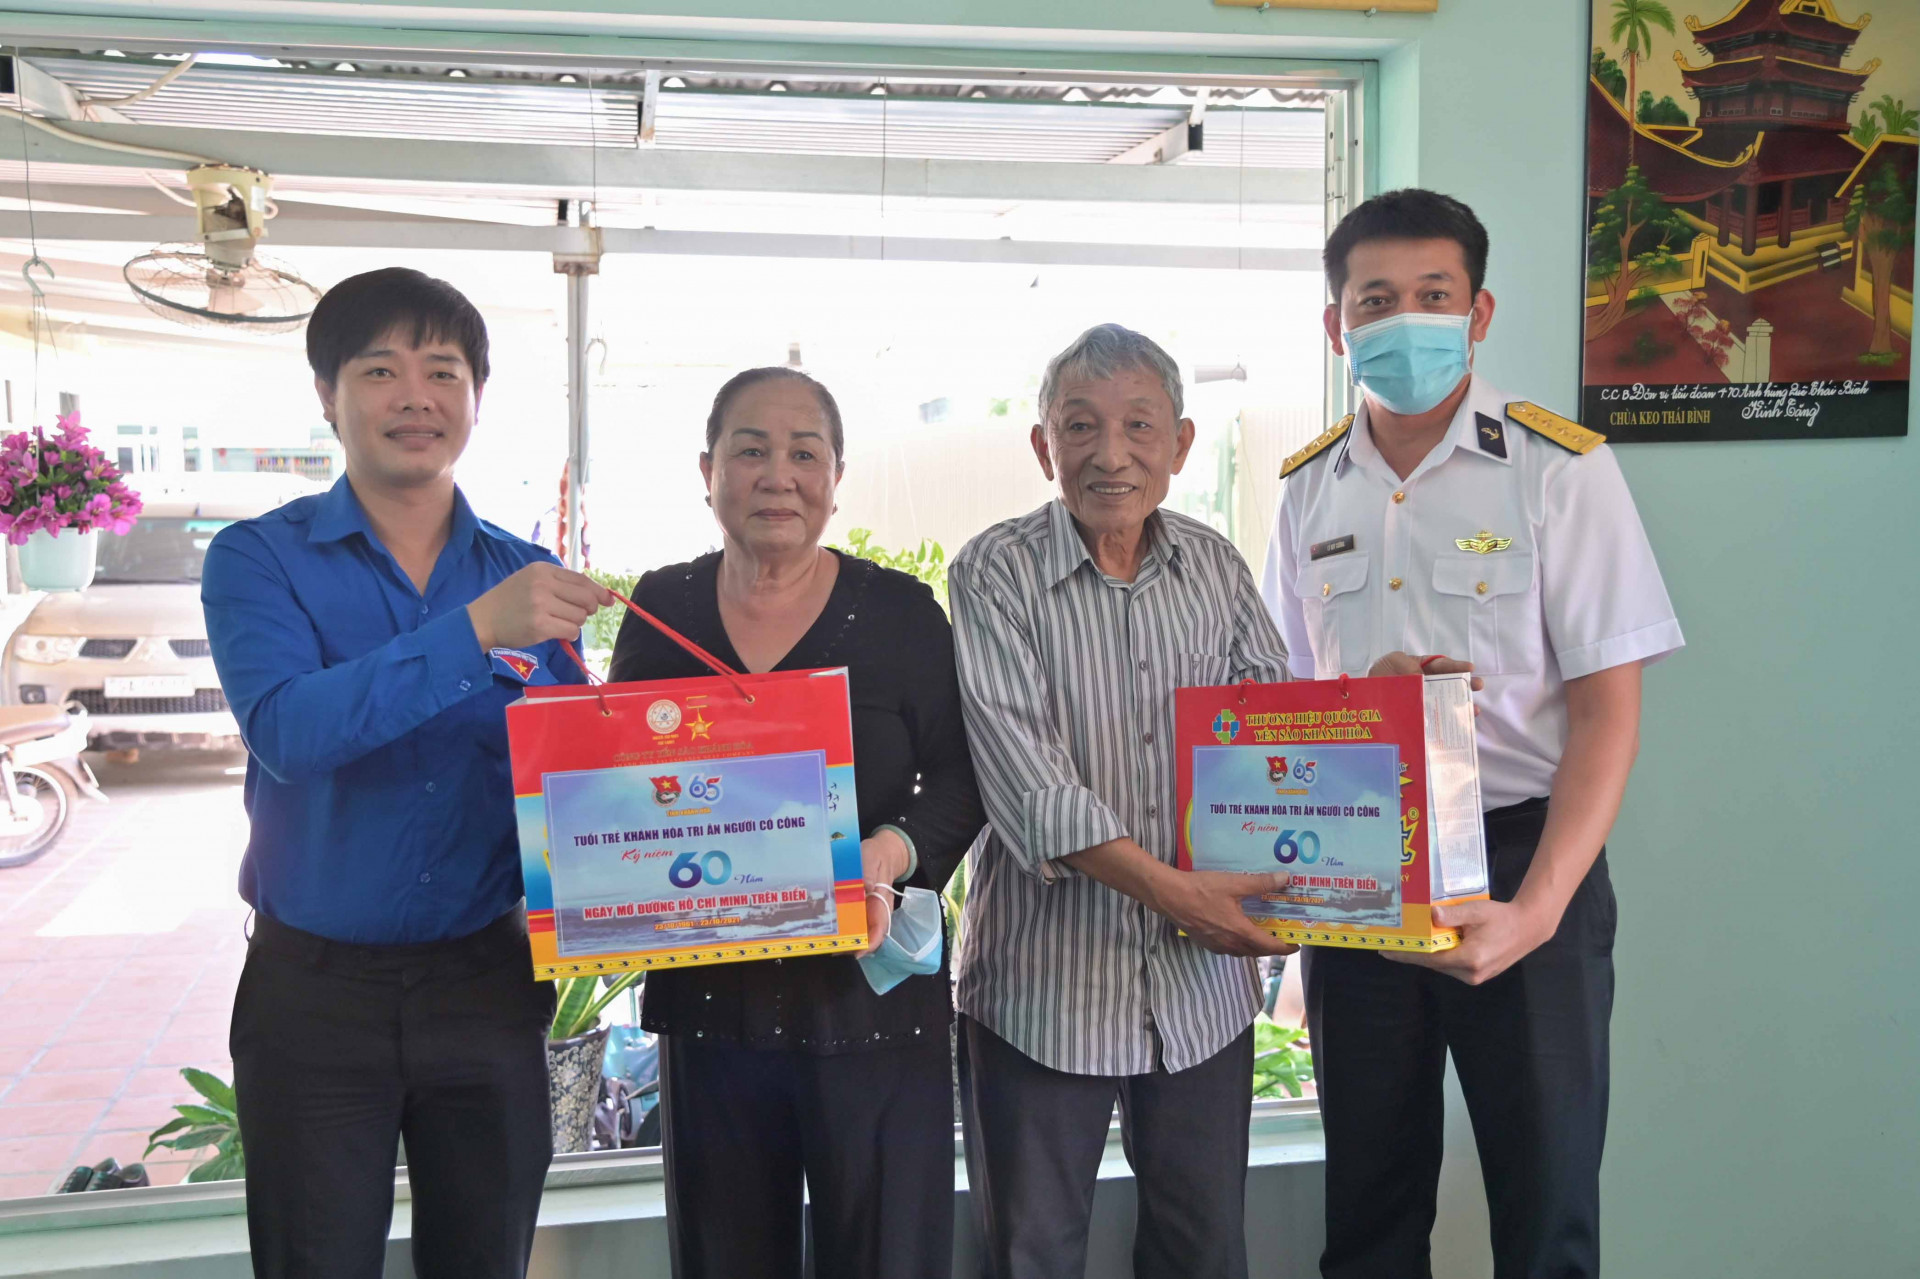 Dịp này, Tỉnh đoàn - Hội Liên hiệp Thanh niên Việt Nam tỉnh đến thăm, tặng quà tri ân những người có công trực tiếp hỗ trợ các chuyến tàu không số